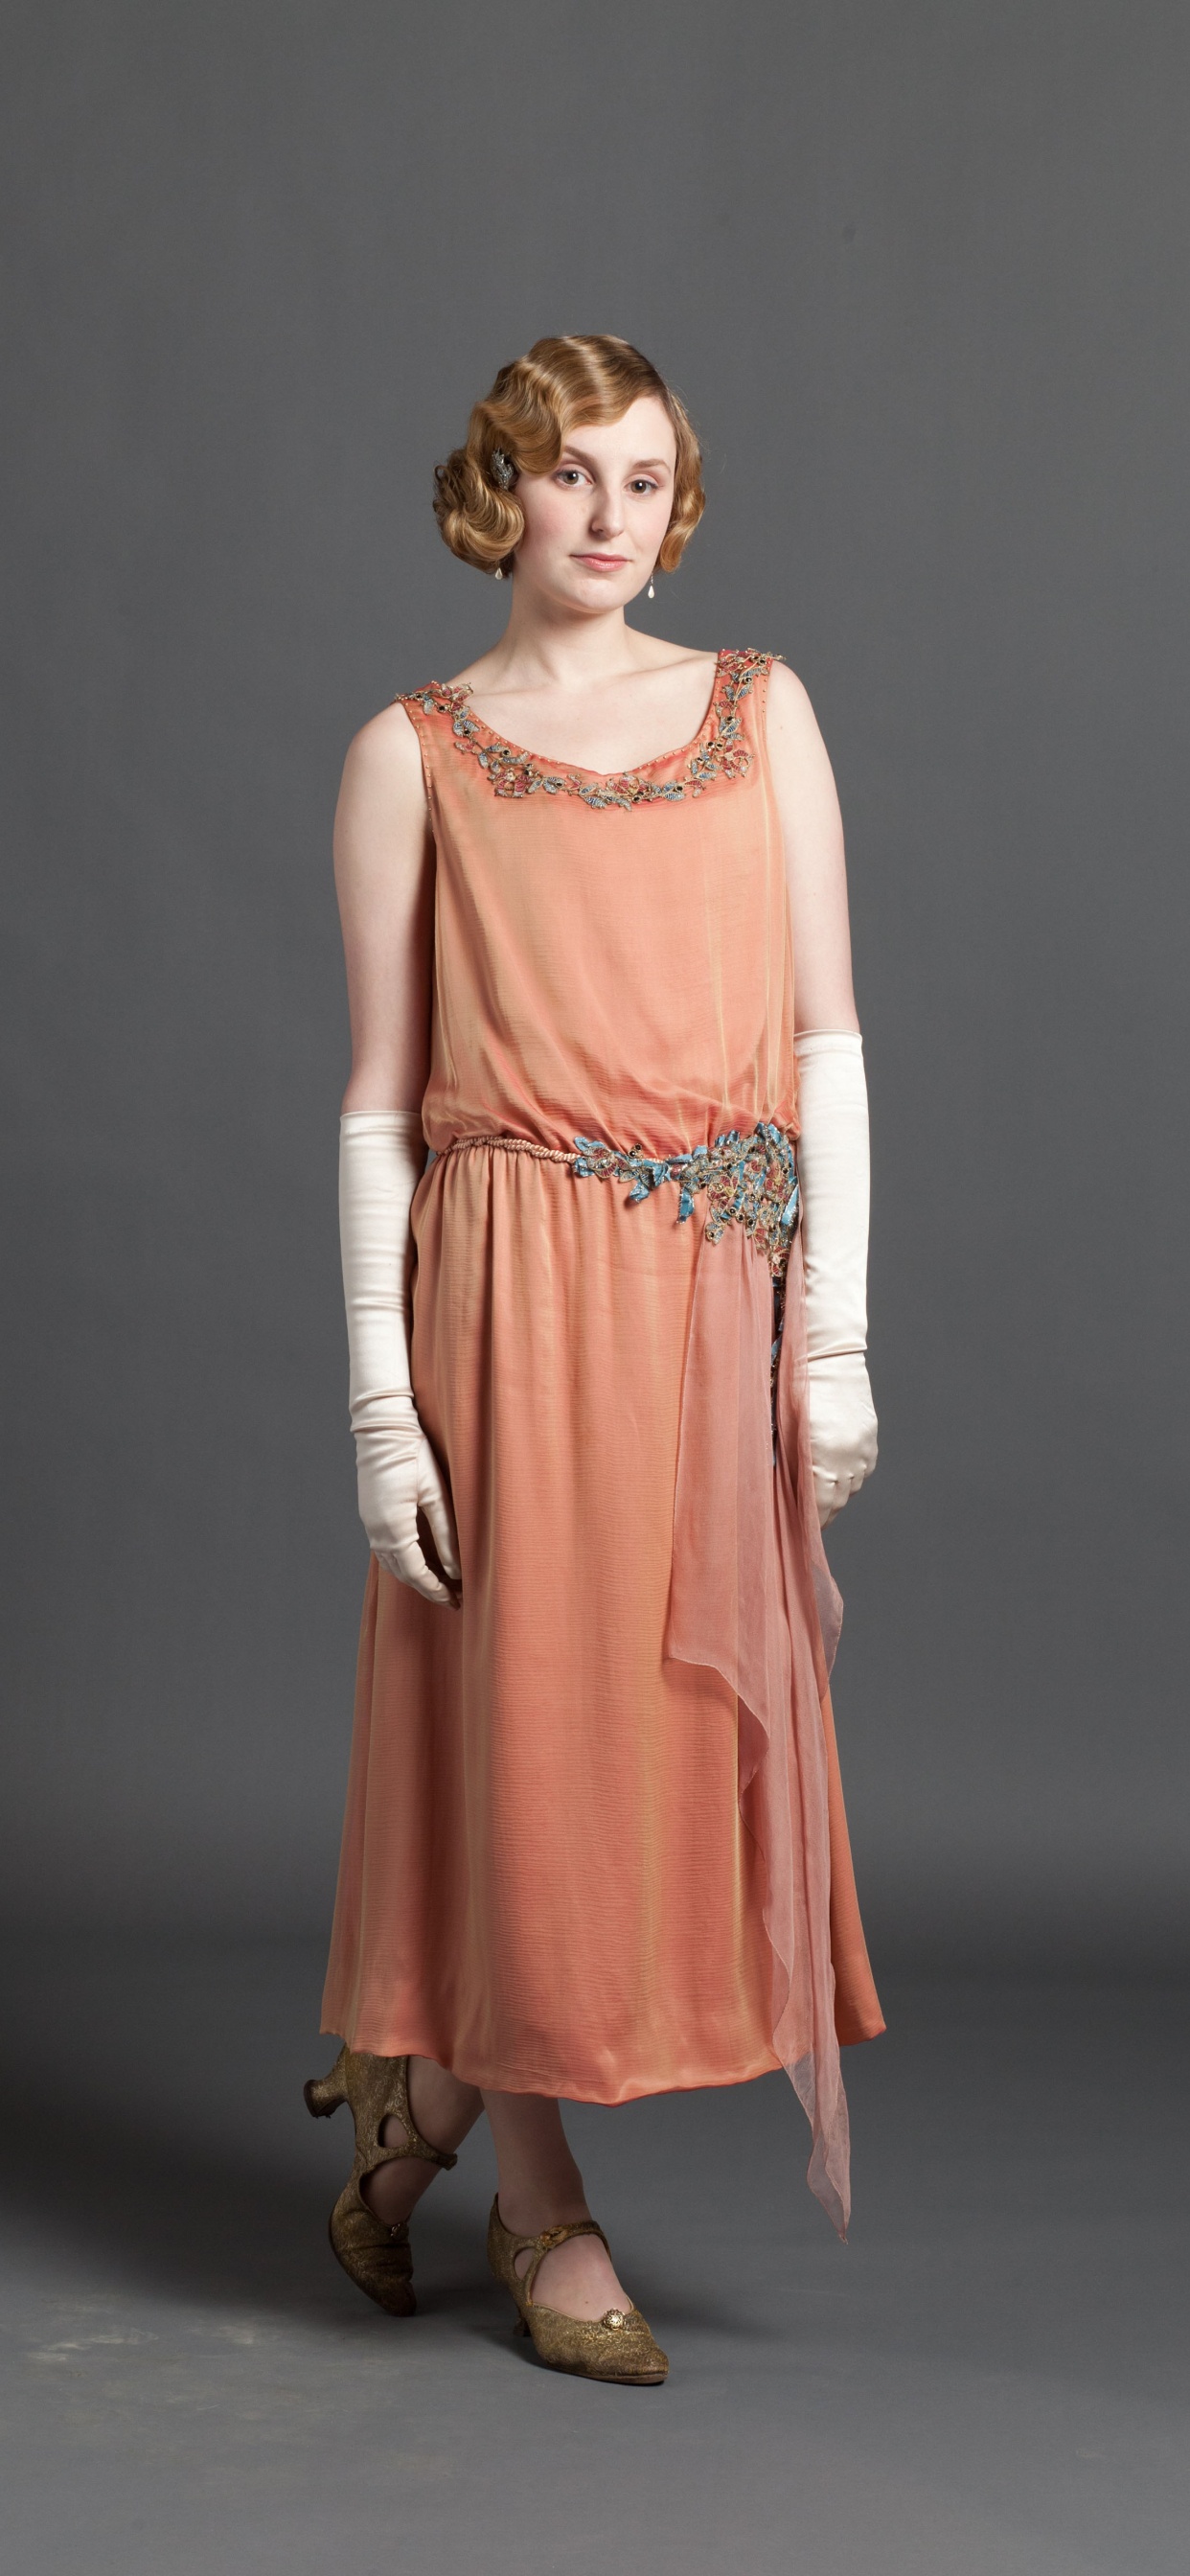 Laura Carmichael, Lady Edith Crawley, Downton Abbey, Dress, Clothing. Wallpaper in 1242x2688 Resolution